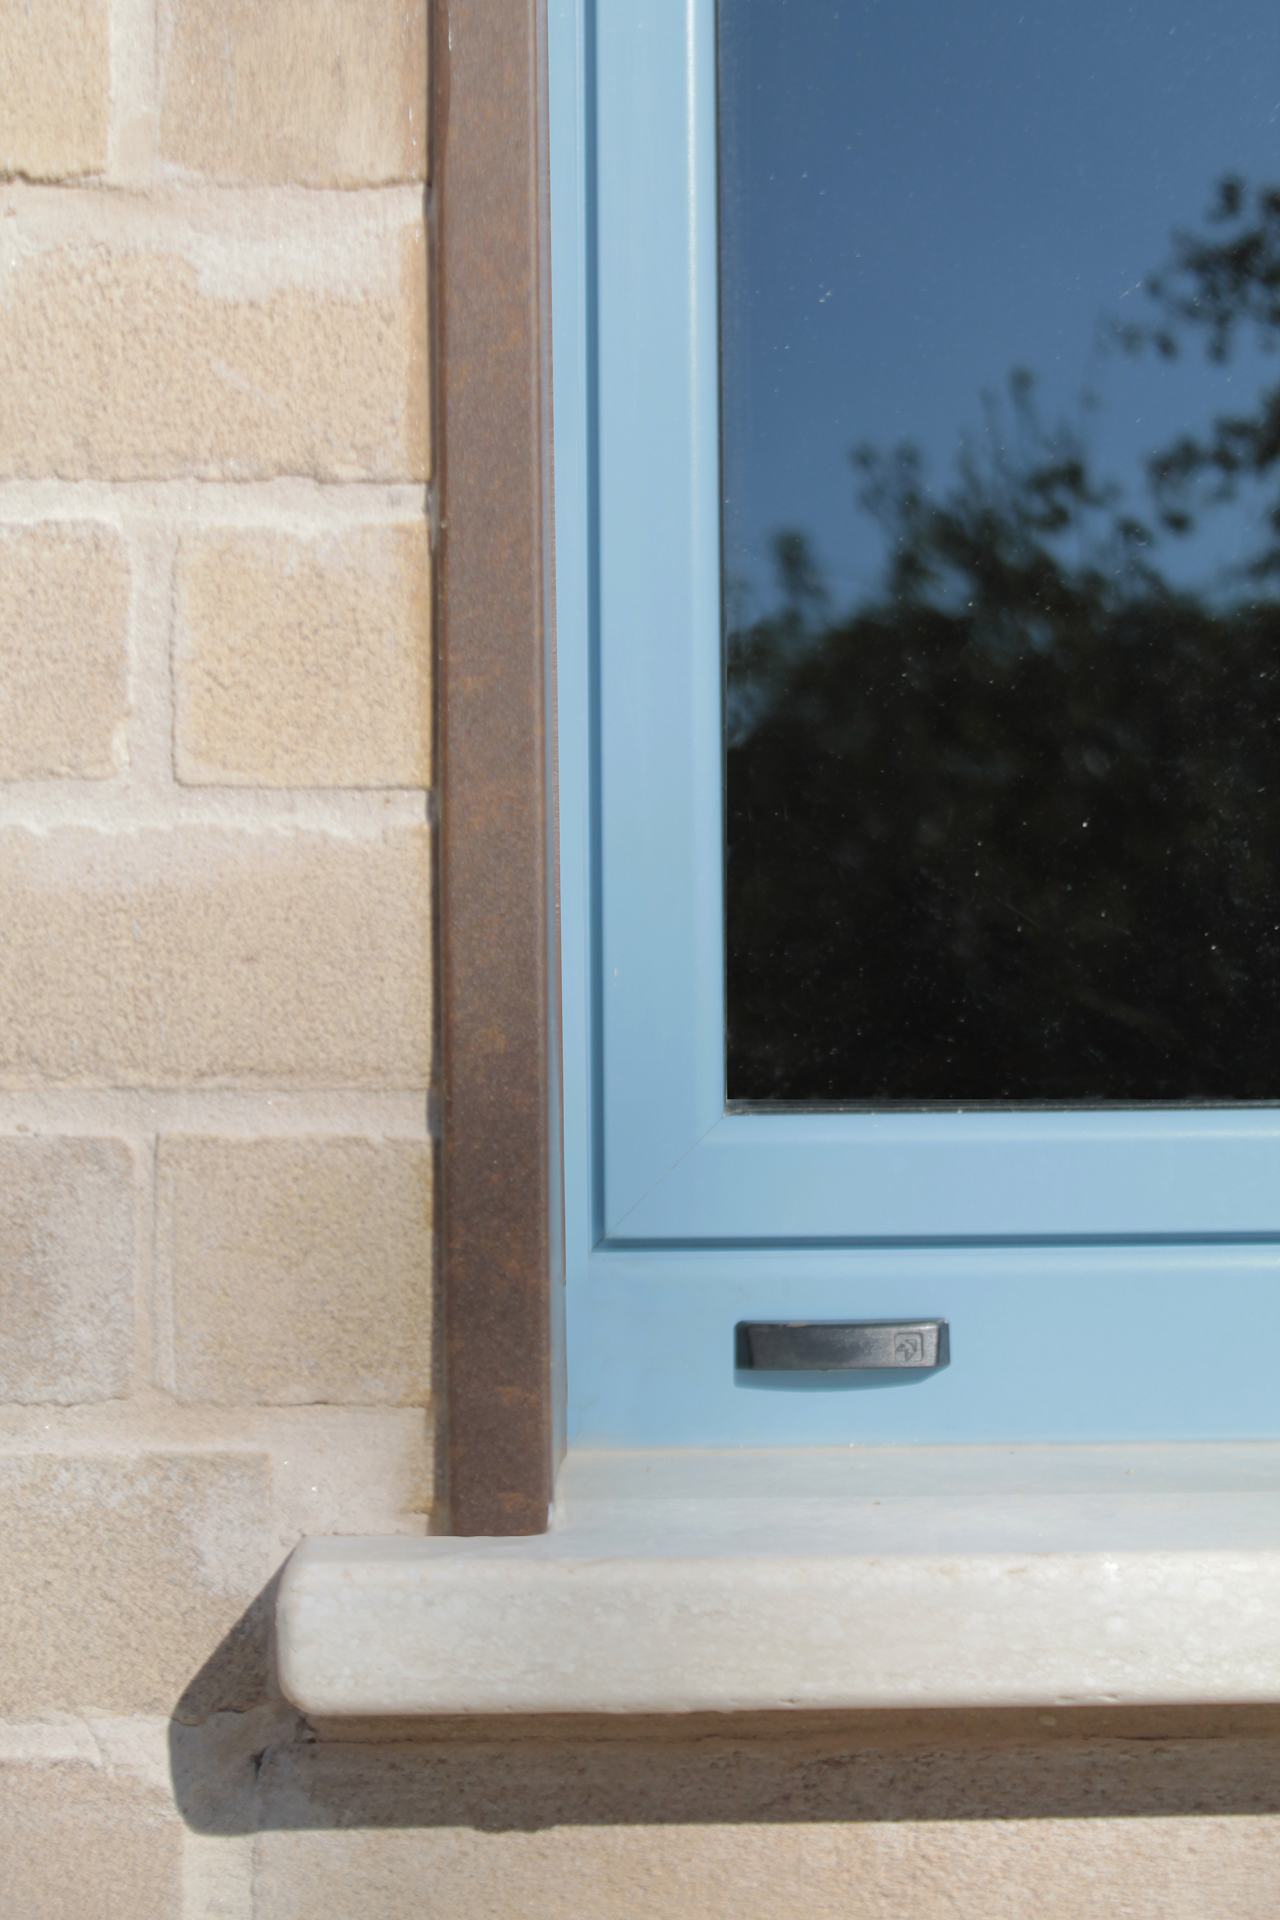 Casa di campagna - esterno - dettaglio della finestra del magazzino con infisso blu, soglia in travertino bocciardato e stipite in lamiera effetto acciaio corten parete in mattoni - pomeriggio di sole